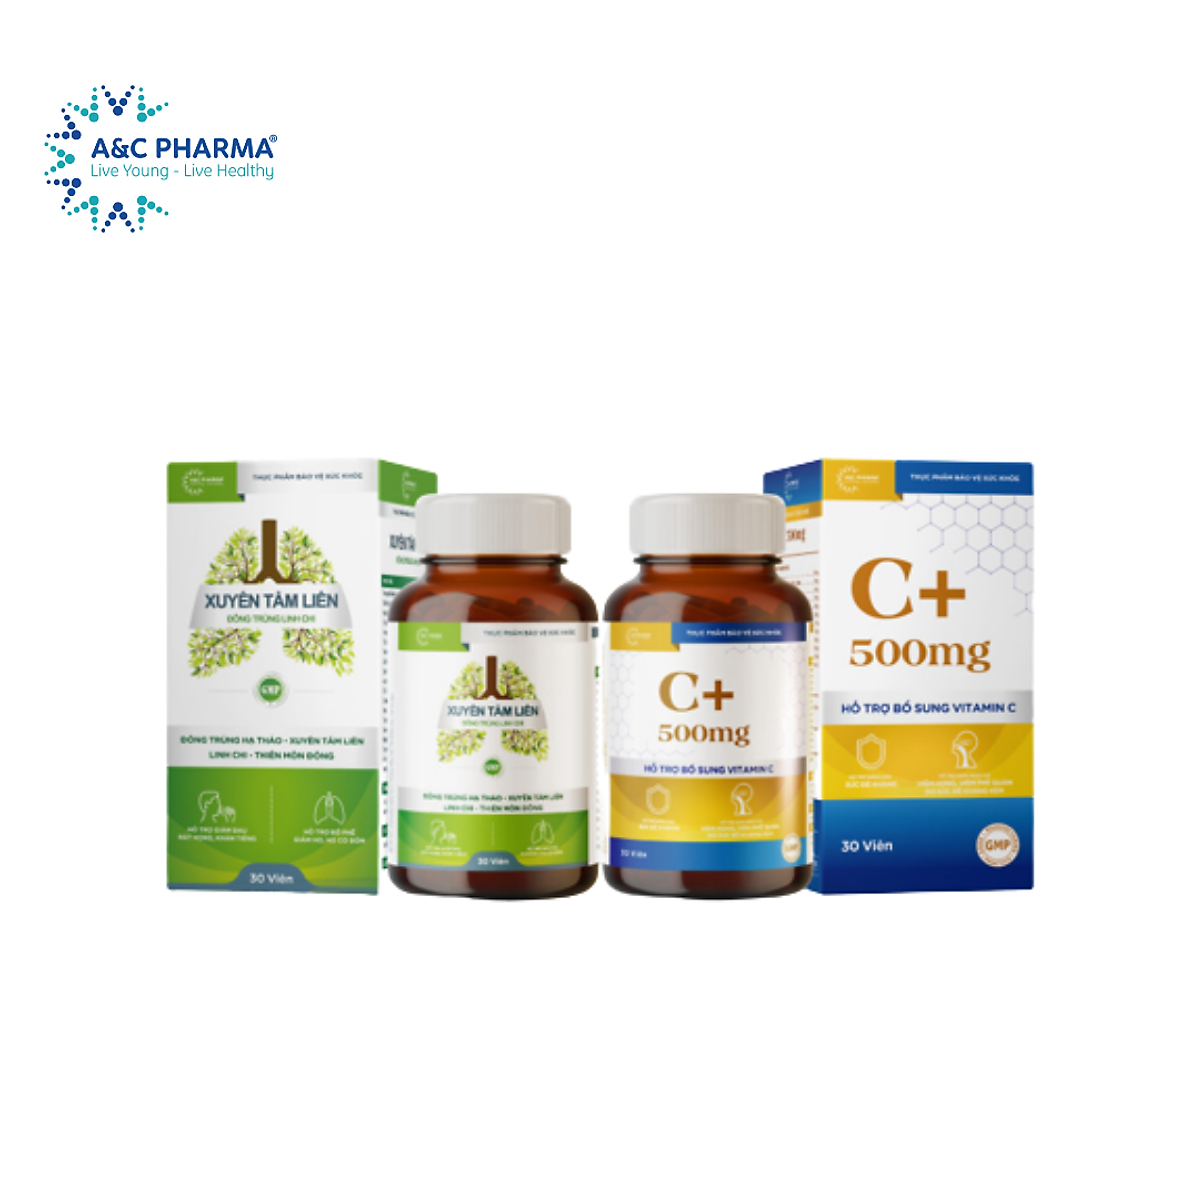 A&C Pharma Combo Bảo vệ sức khỏe: Xuyên tâm liên Đông trùng Linh chi và Vitamin C+ 500mg 3in1